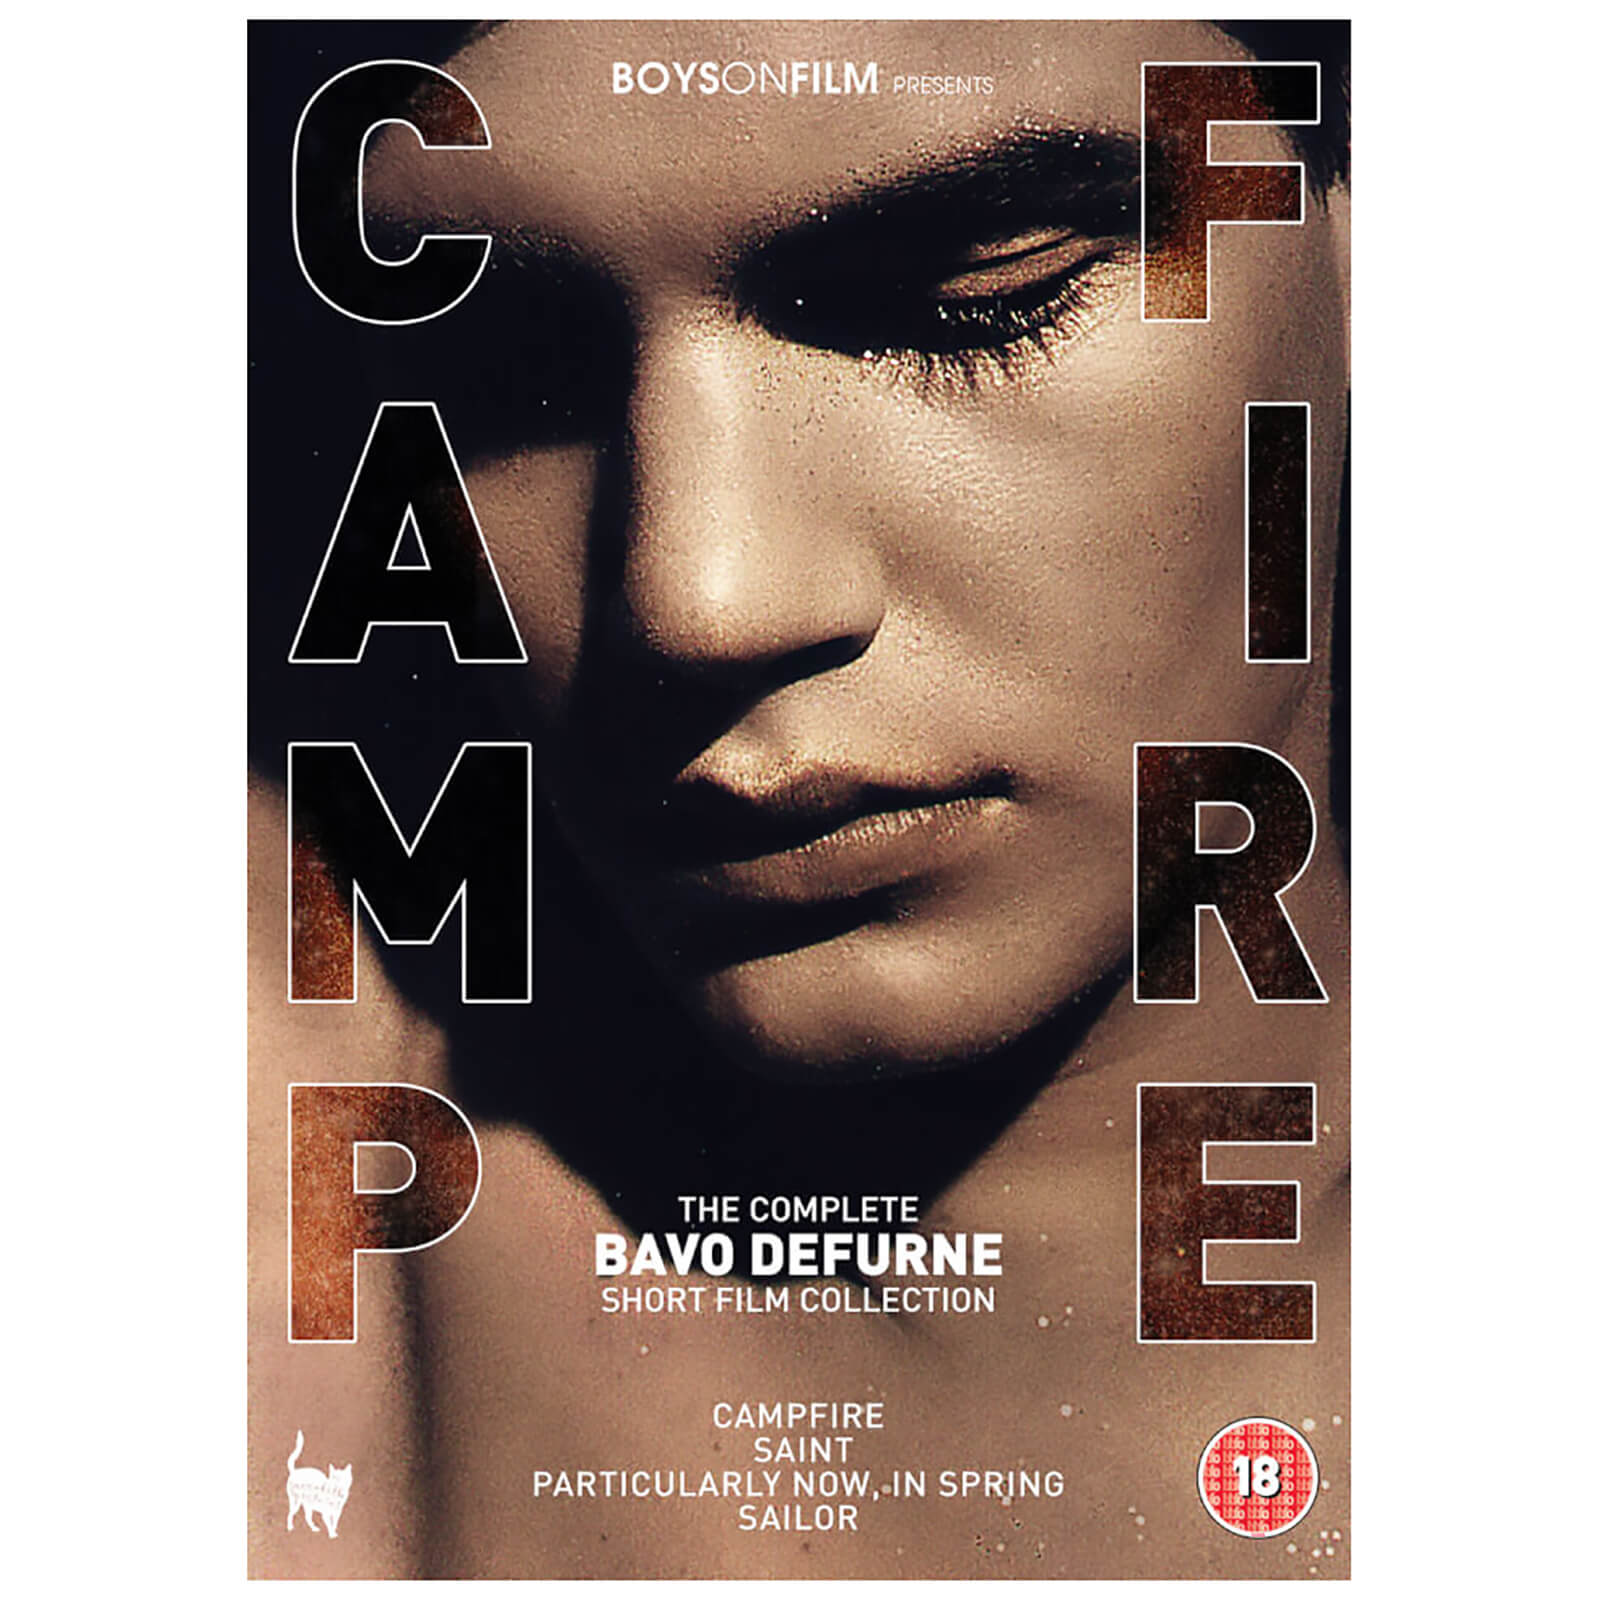 Boys On Film Presents: Campfire von Saffron Hill